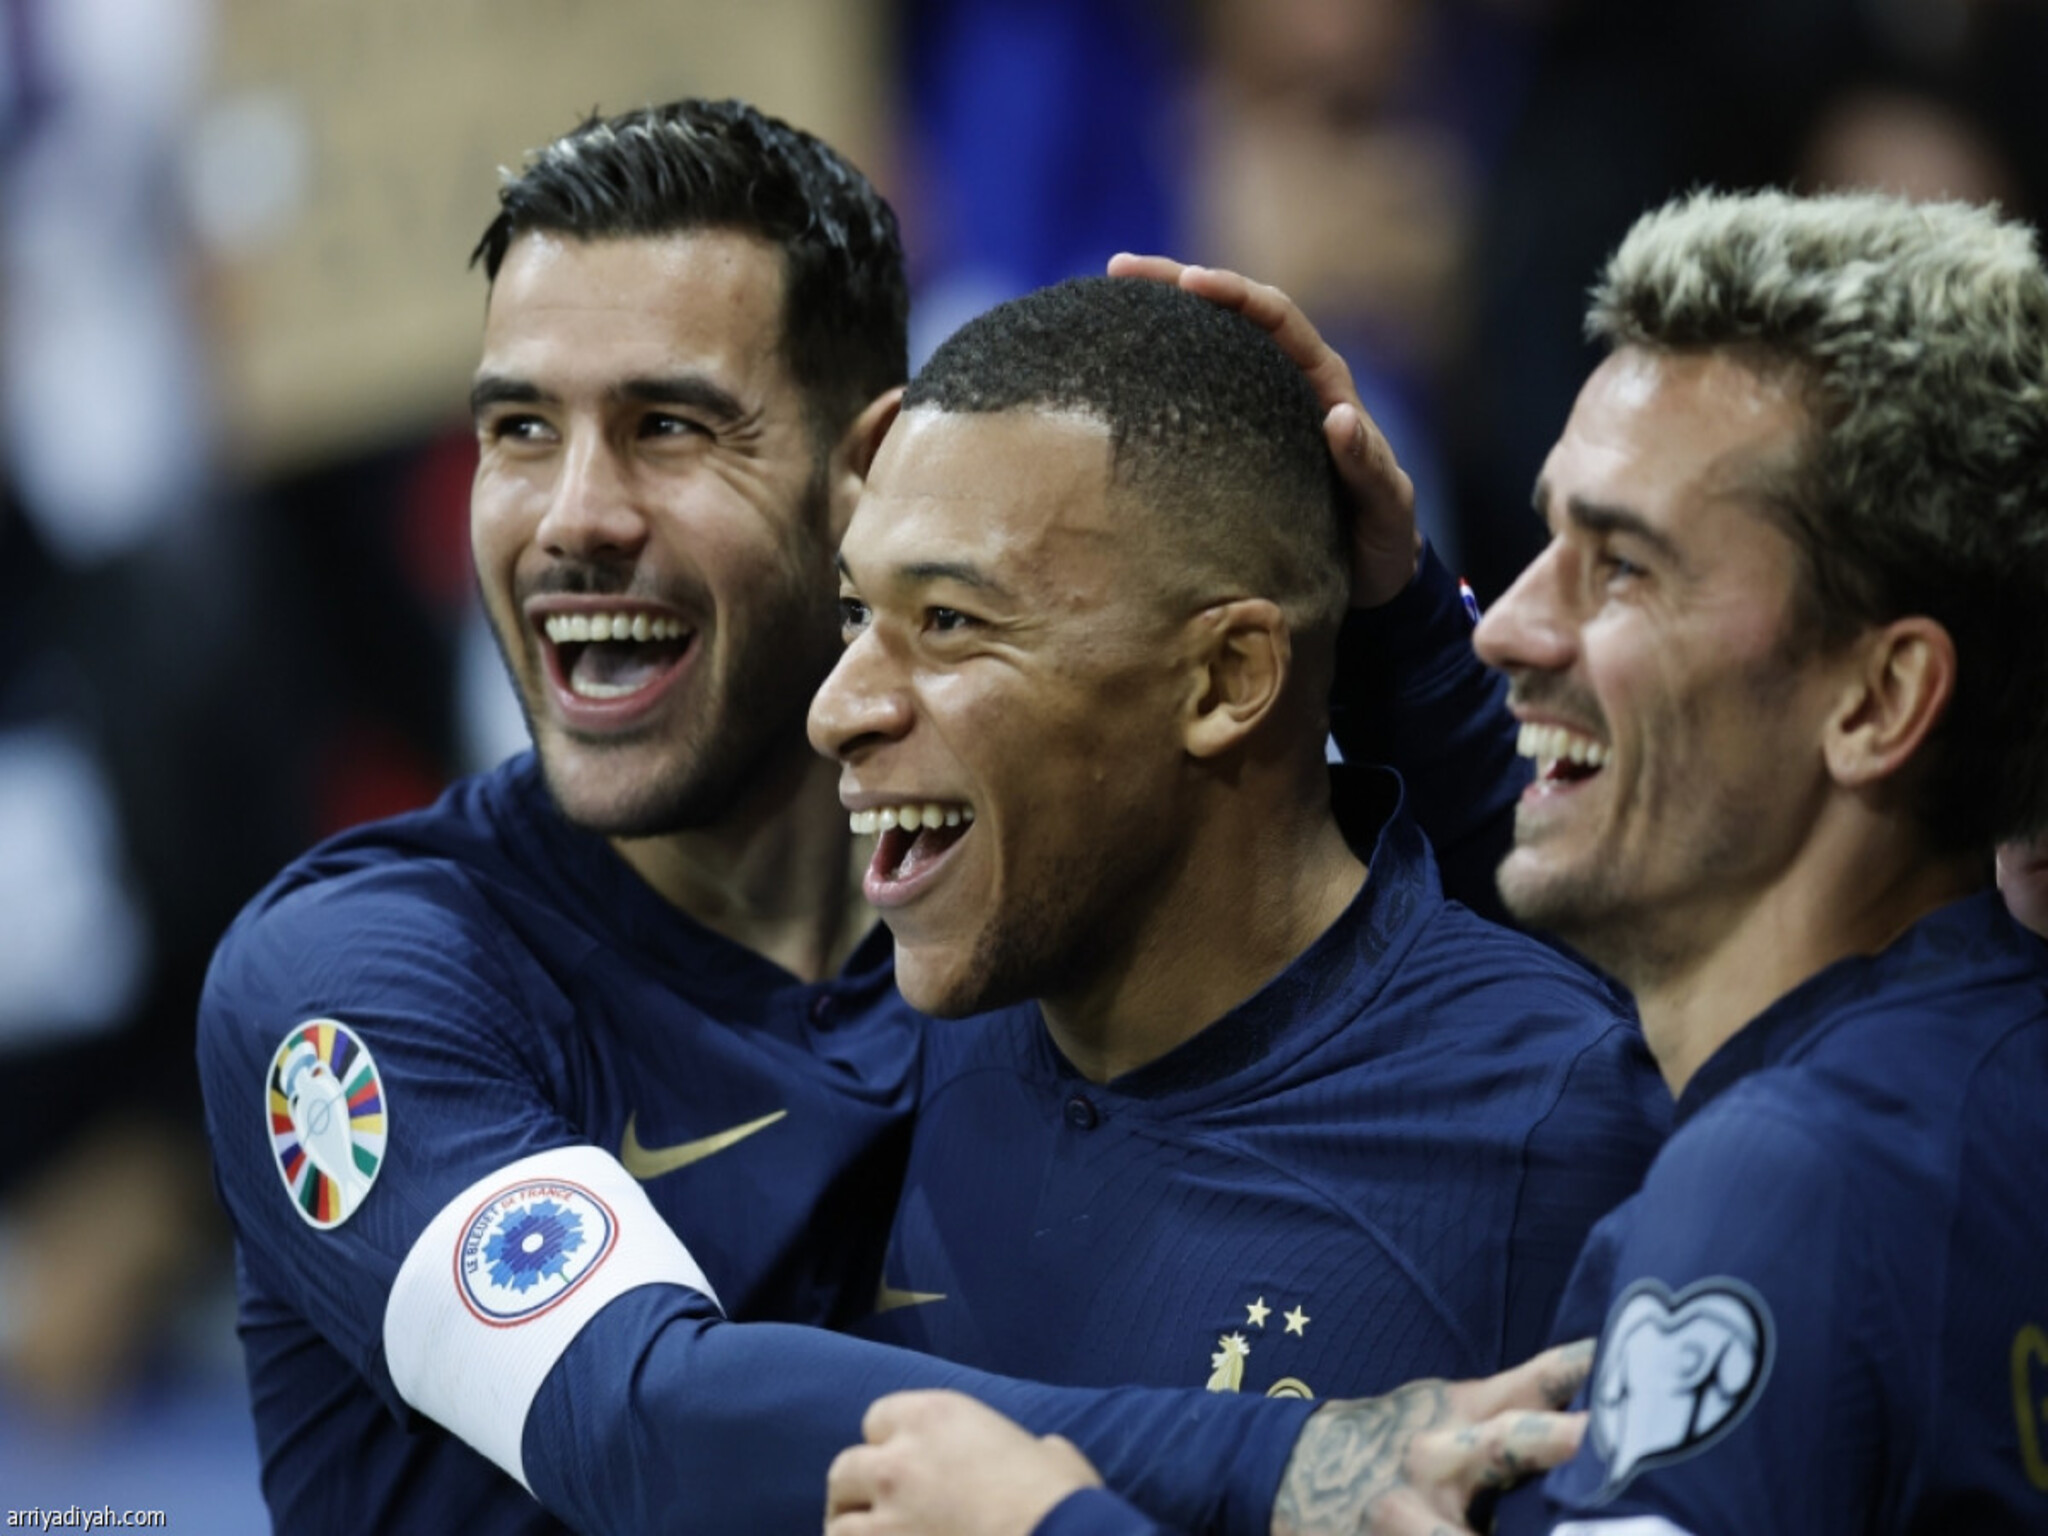 منتخب فرنسا يحقق أكبر أنتصار في تاريخ كرة القدم ... 14 هدف بدون مقابل